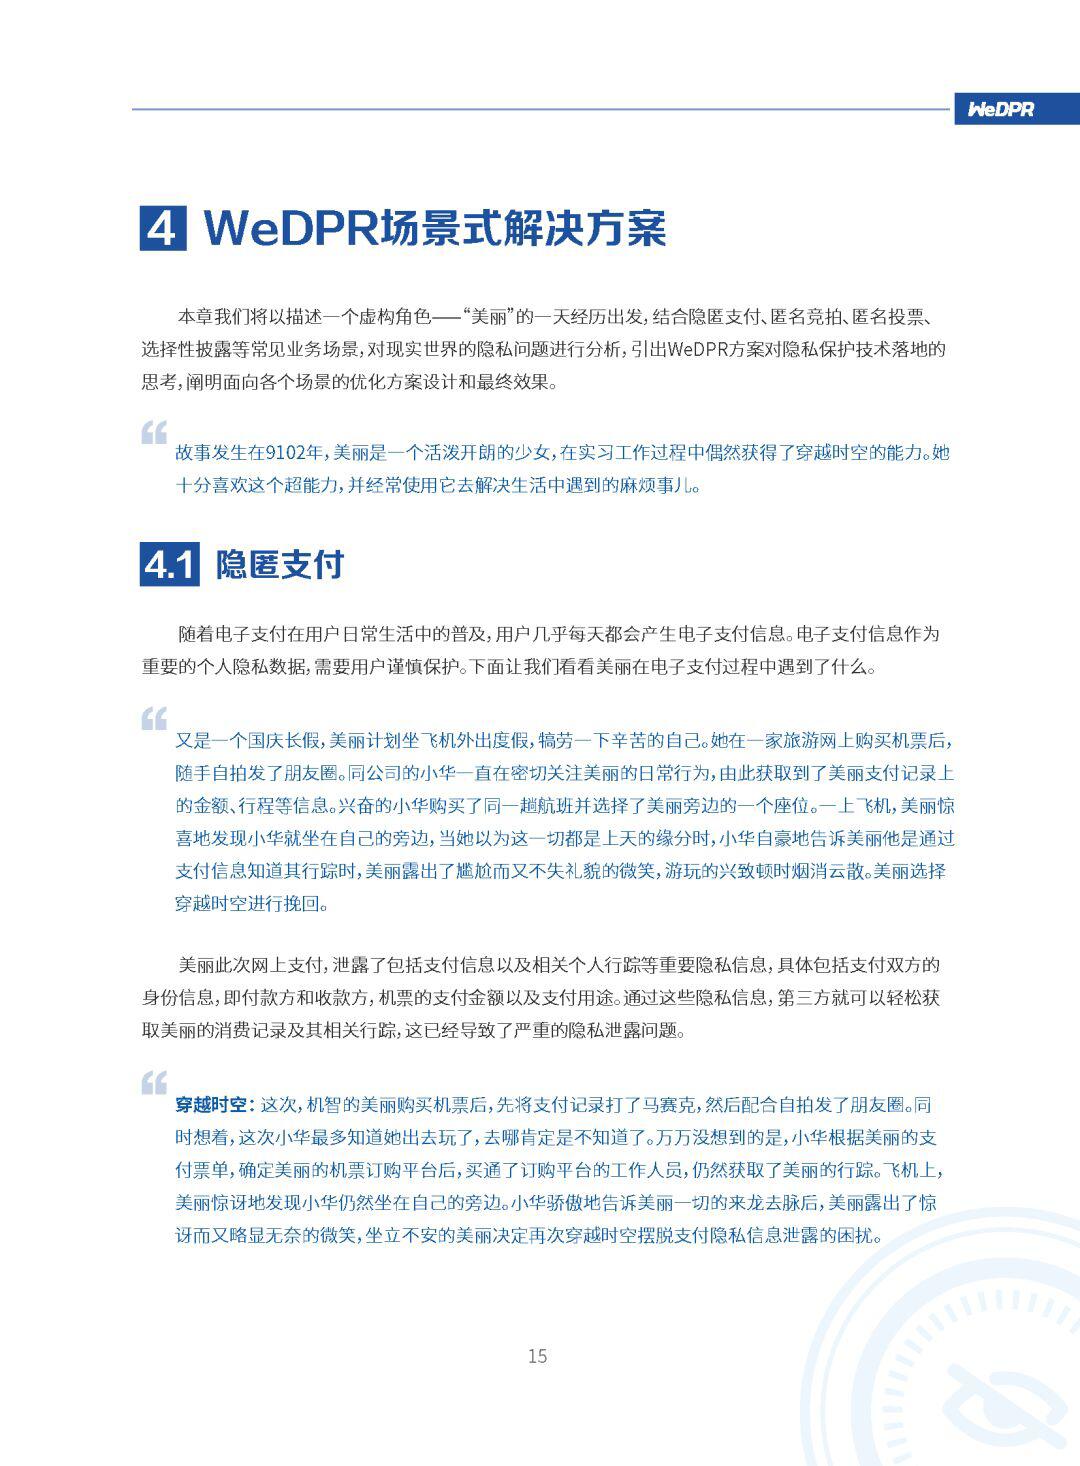 微众银行区块链：WeDPR隐私保护白皮书发布